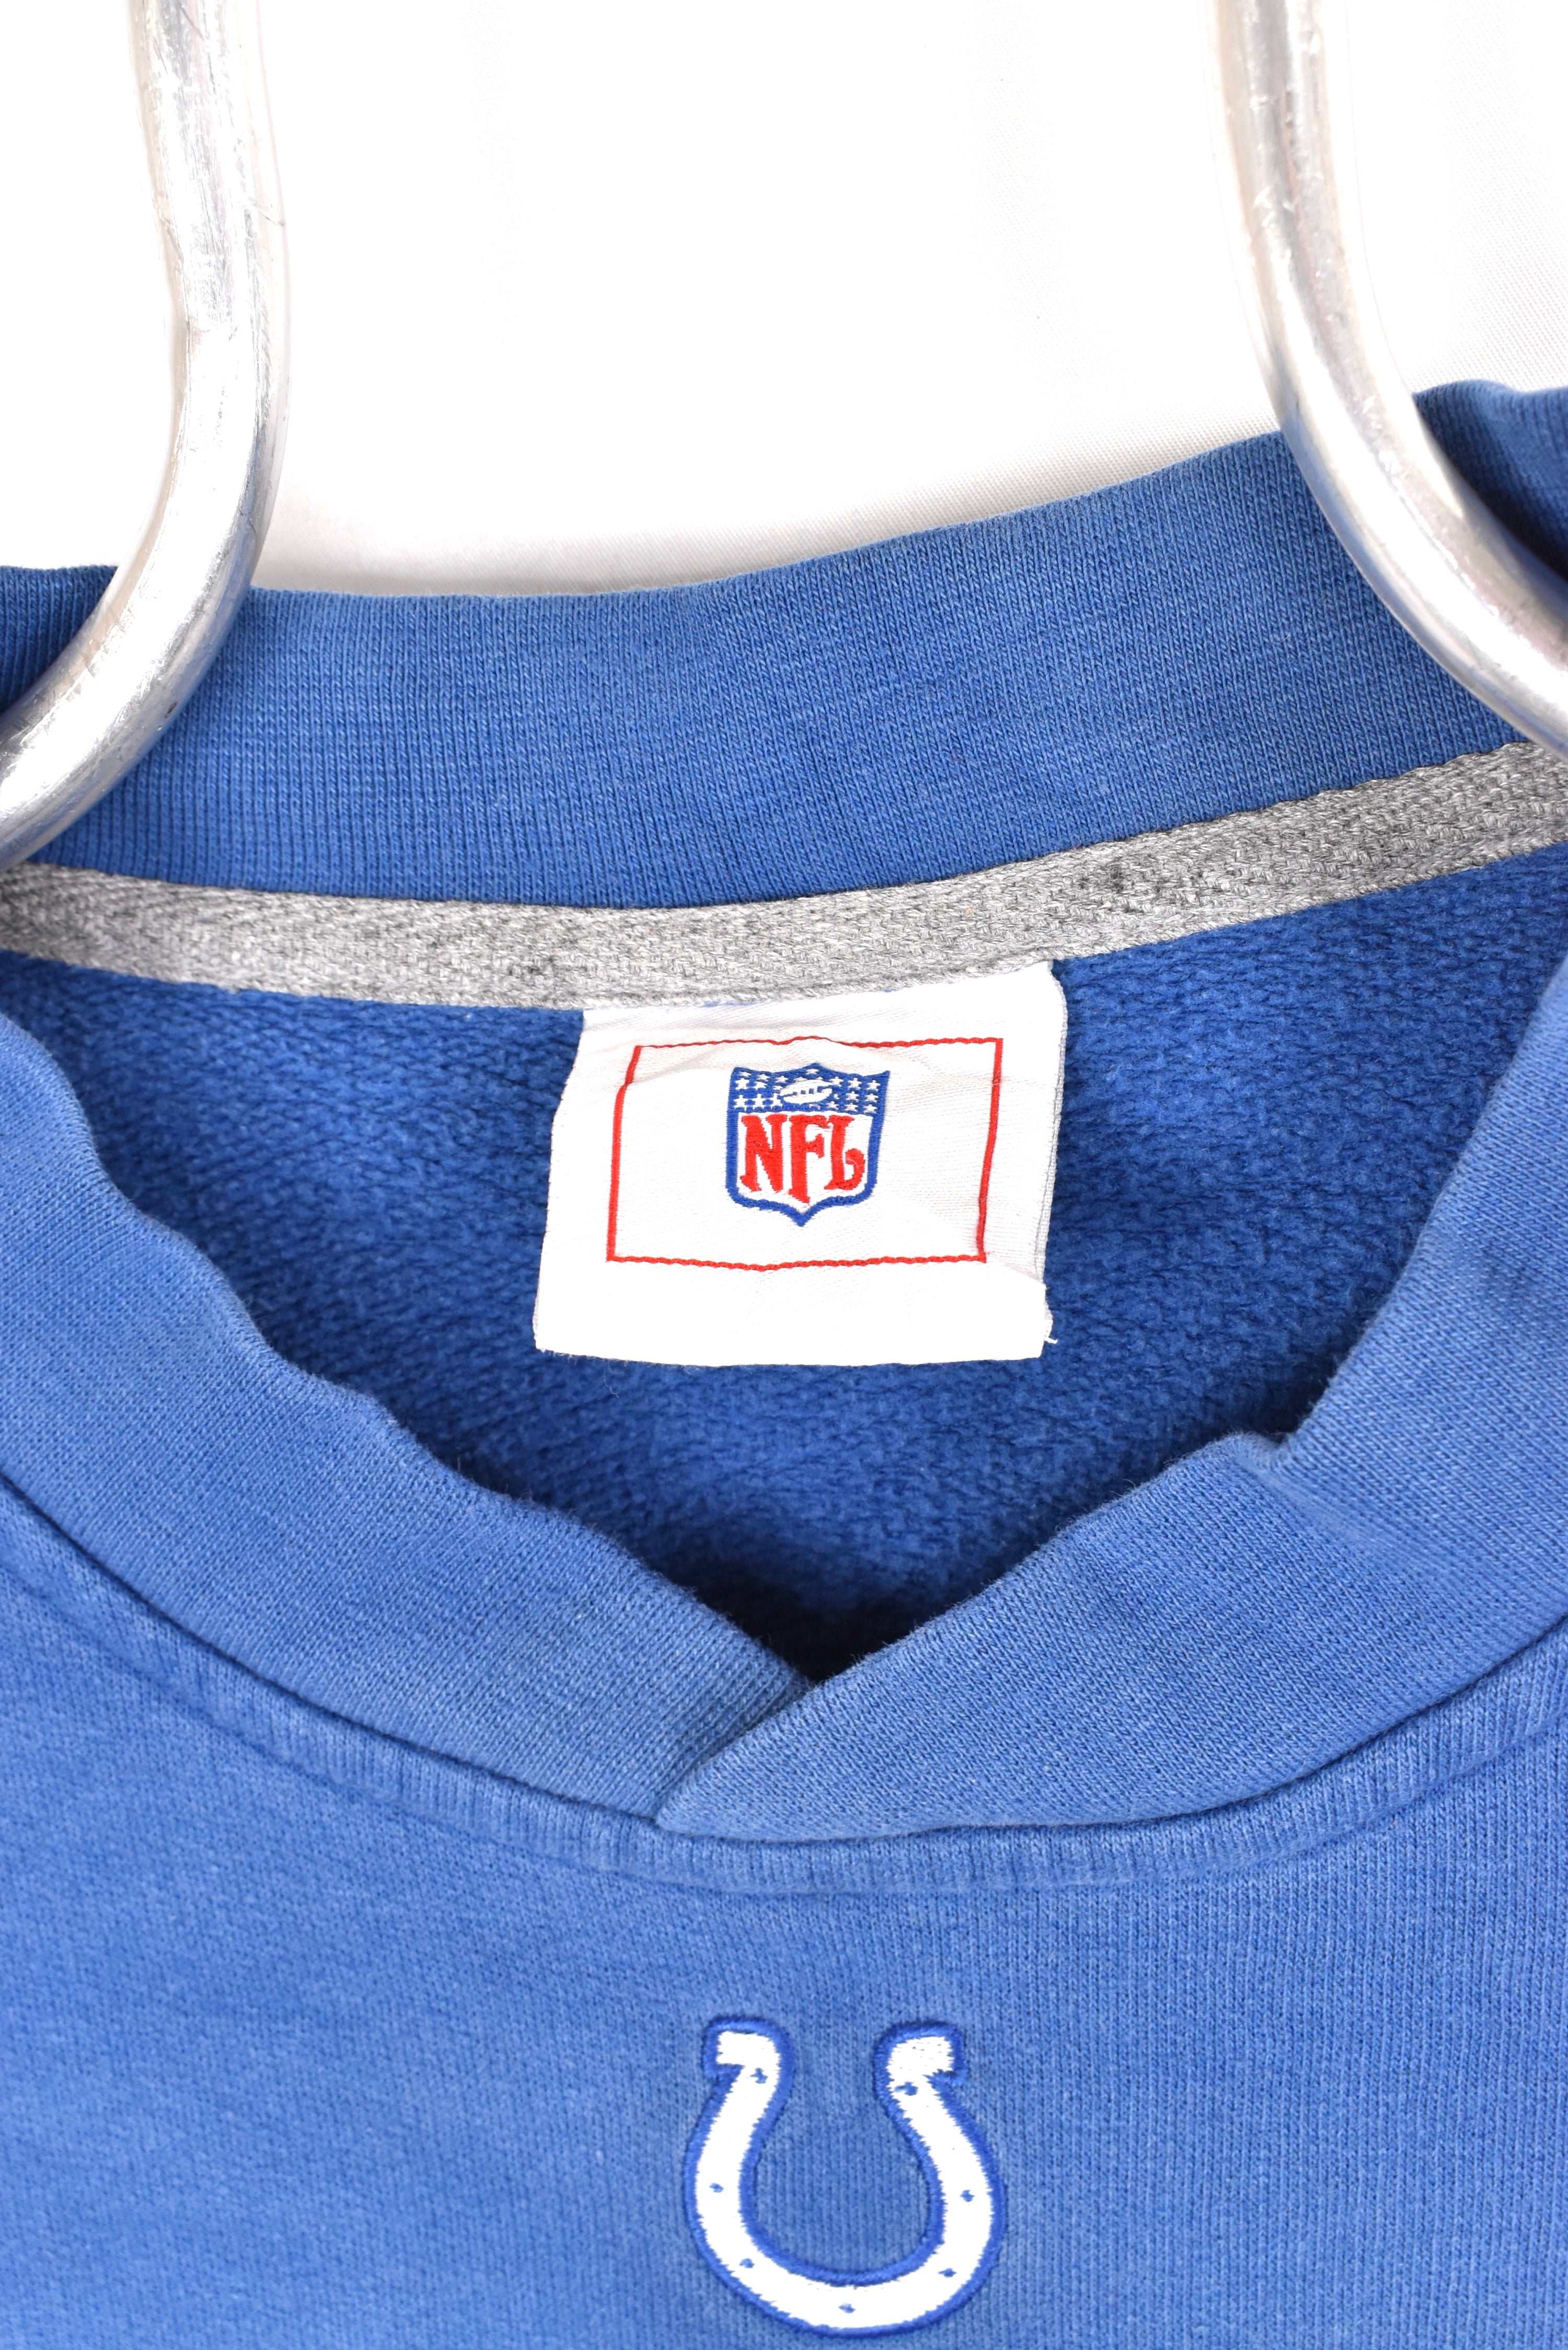 Vintage Indianapolis Colts sweatshirt, NFL blue embroidered crewneck - AU XL PRO SPORT